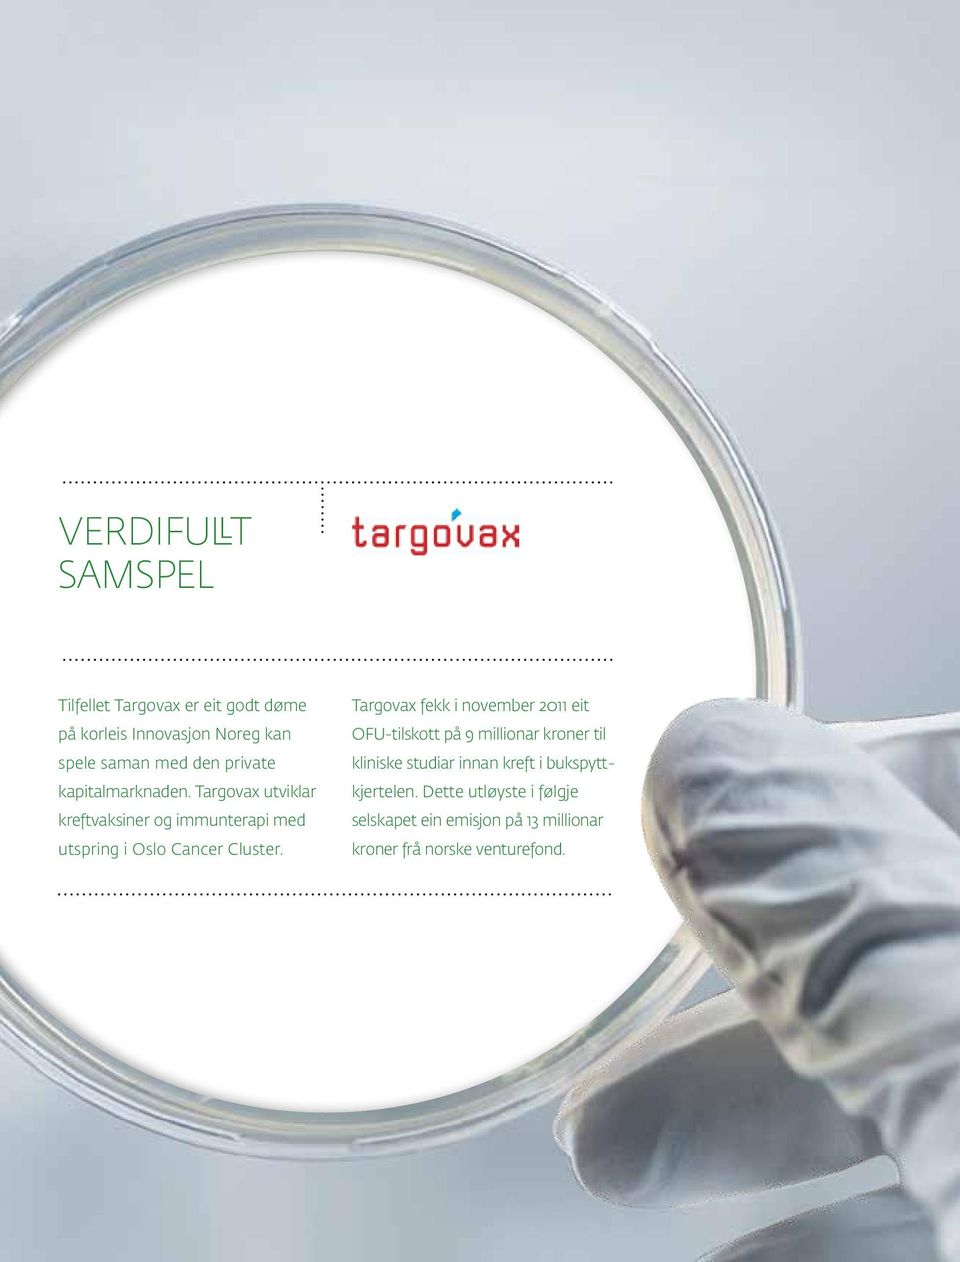 Targovax utviklar kreftvaksiner og immunterapi med utspring i Oslo Cancer Cluster.